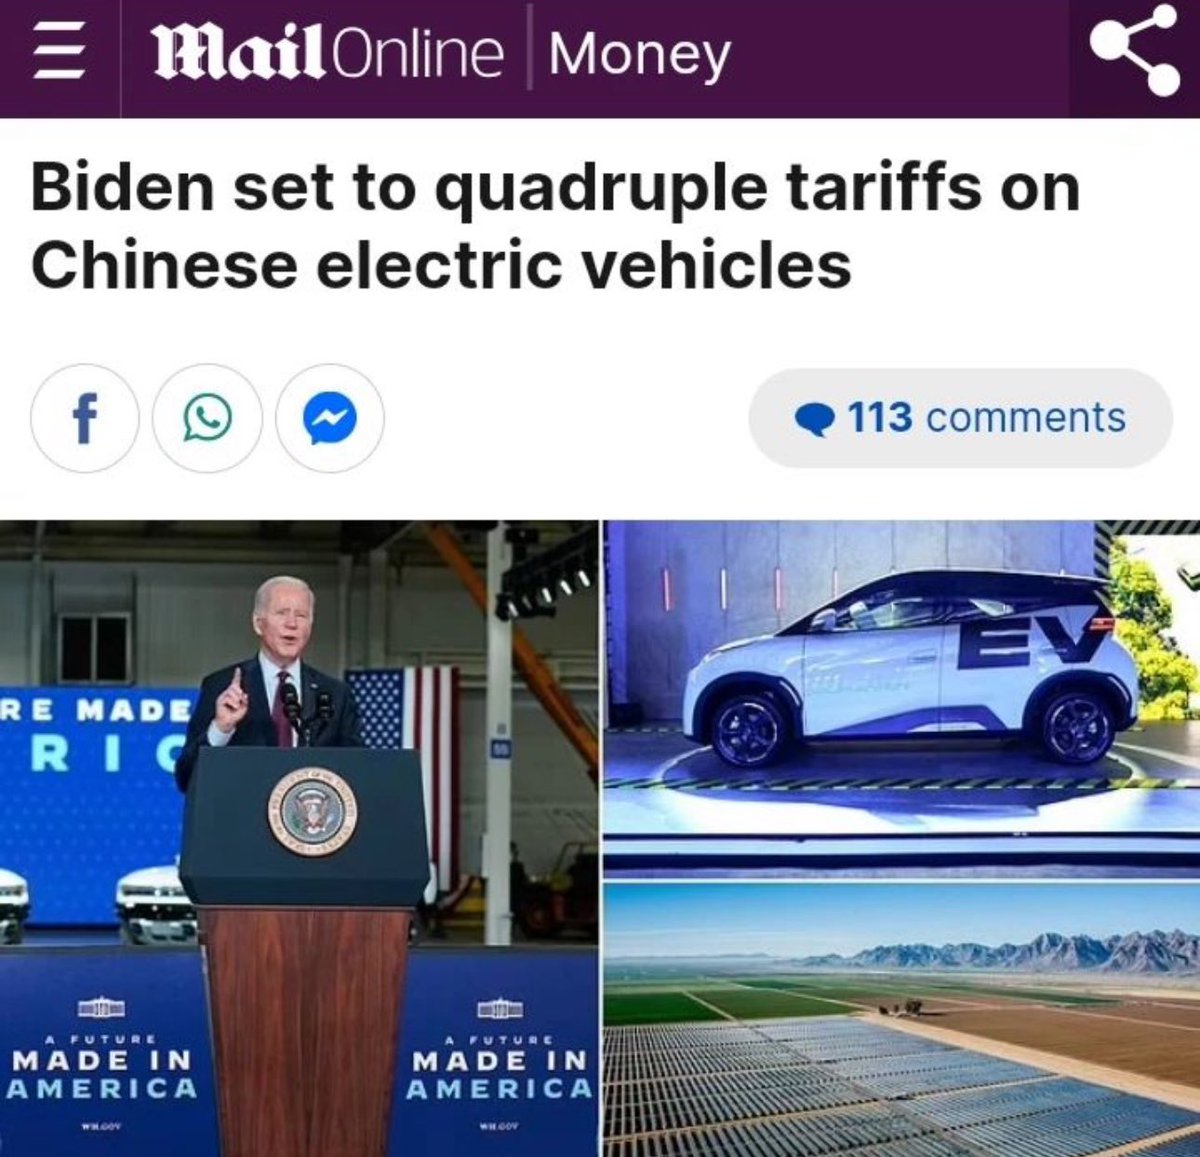 “Biden cuadriplicará los aranceles en vehículos eléctrico chinos”. ¿Y capitalismo y el libre mercado? jajajajsjdjjsjsjs